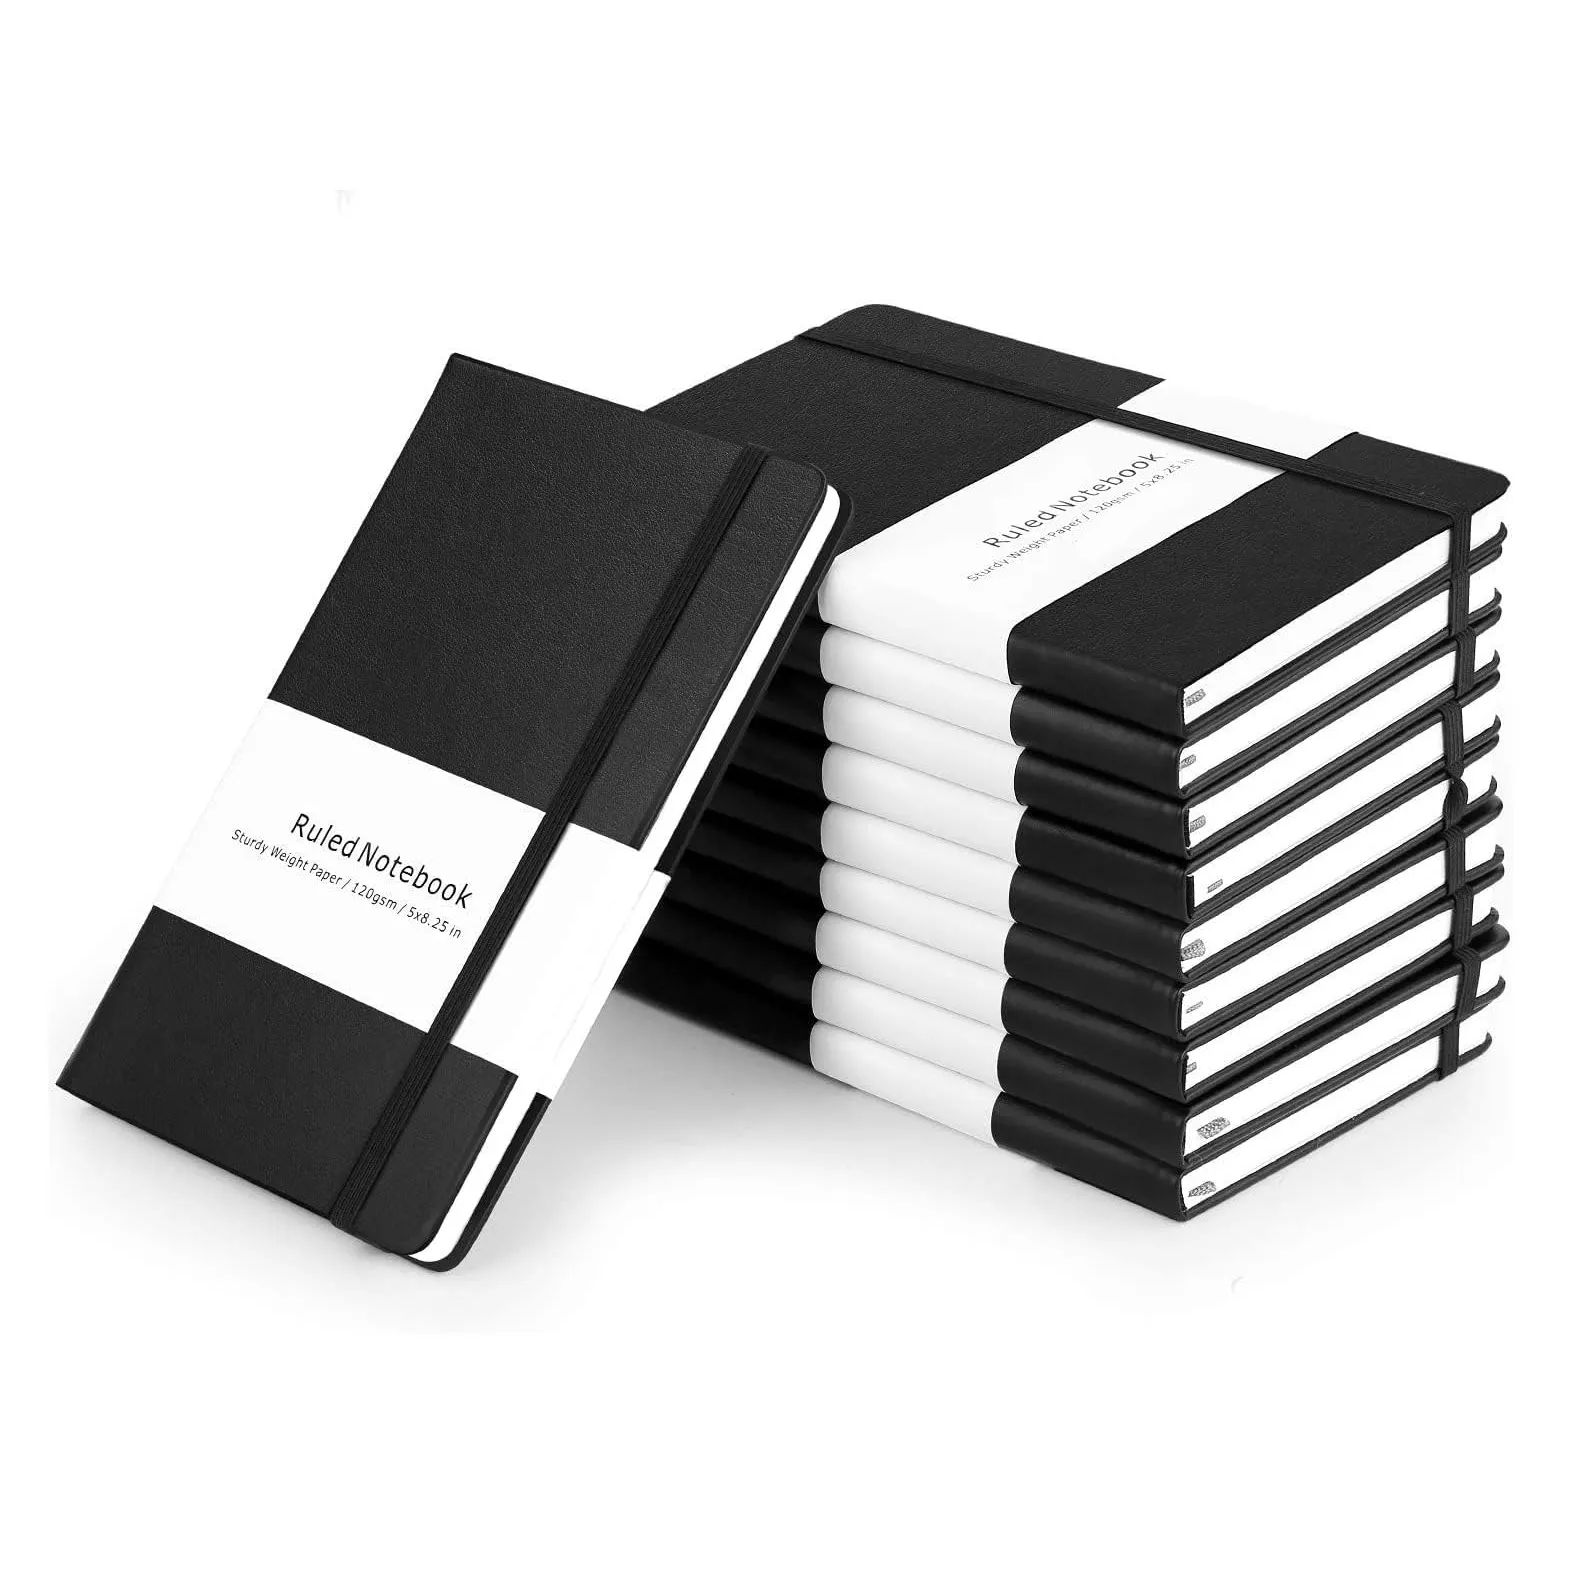 Aturan jurnal baru buku harian bisnis sekolah kantor tali elastis kertas bergaris tebal Notebook perusahaan Hitam